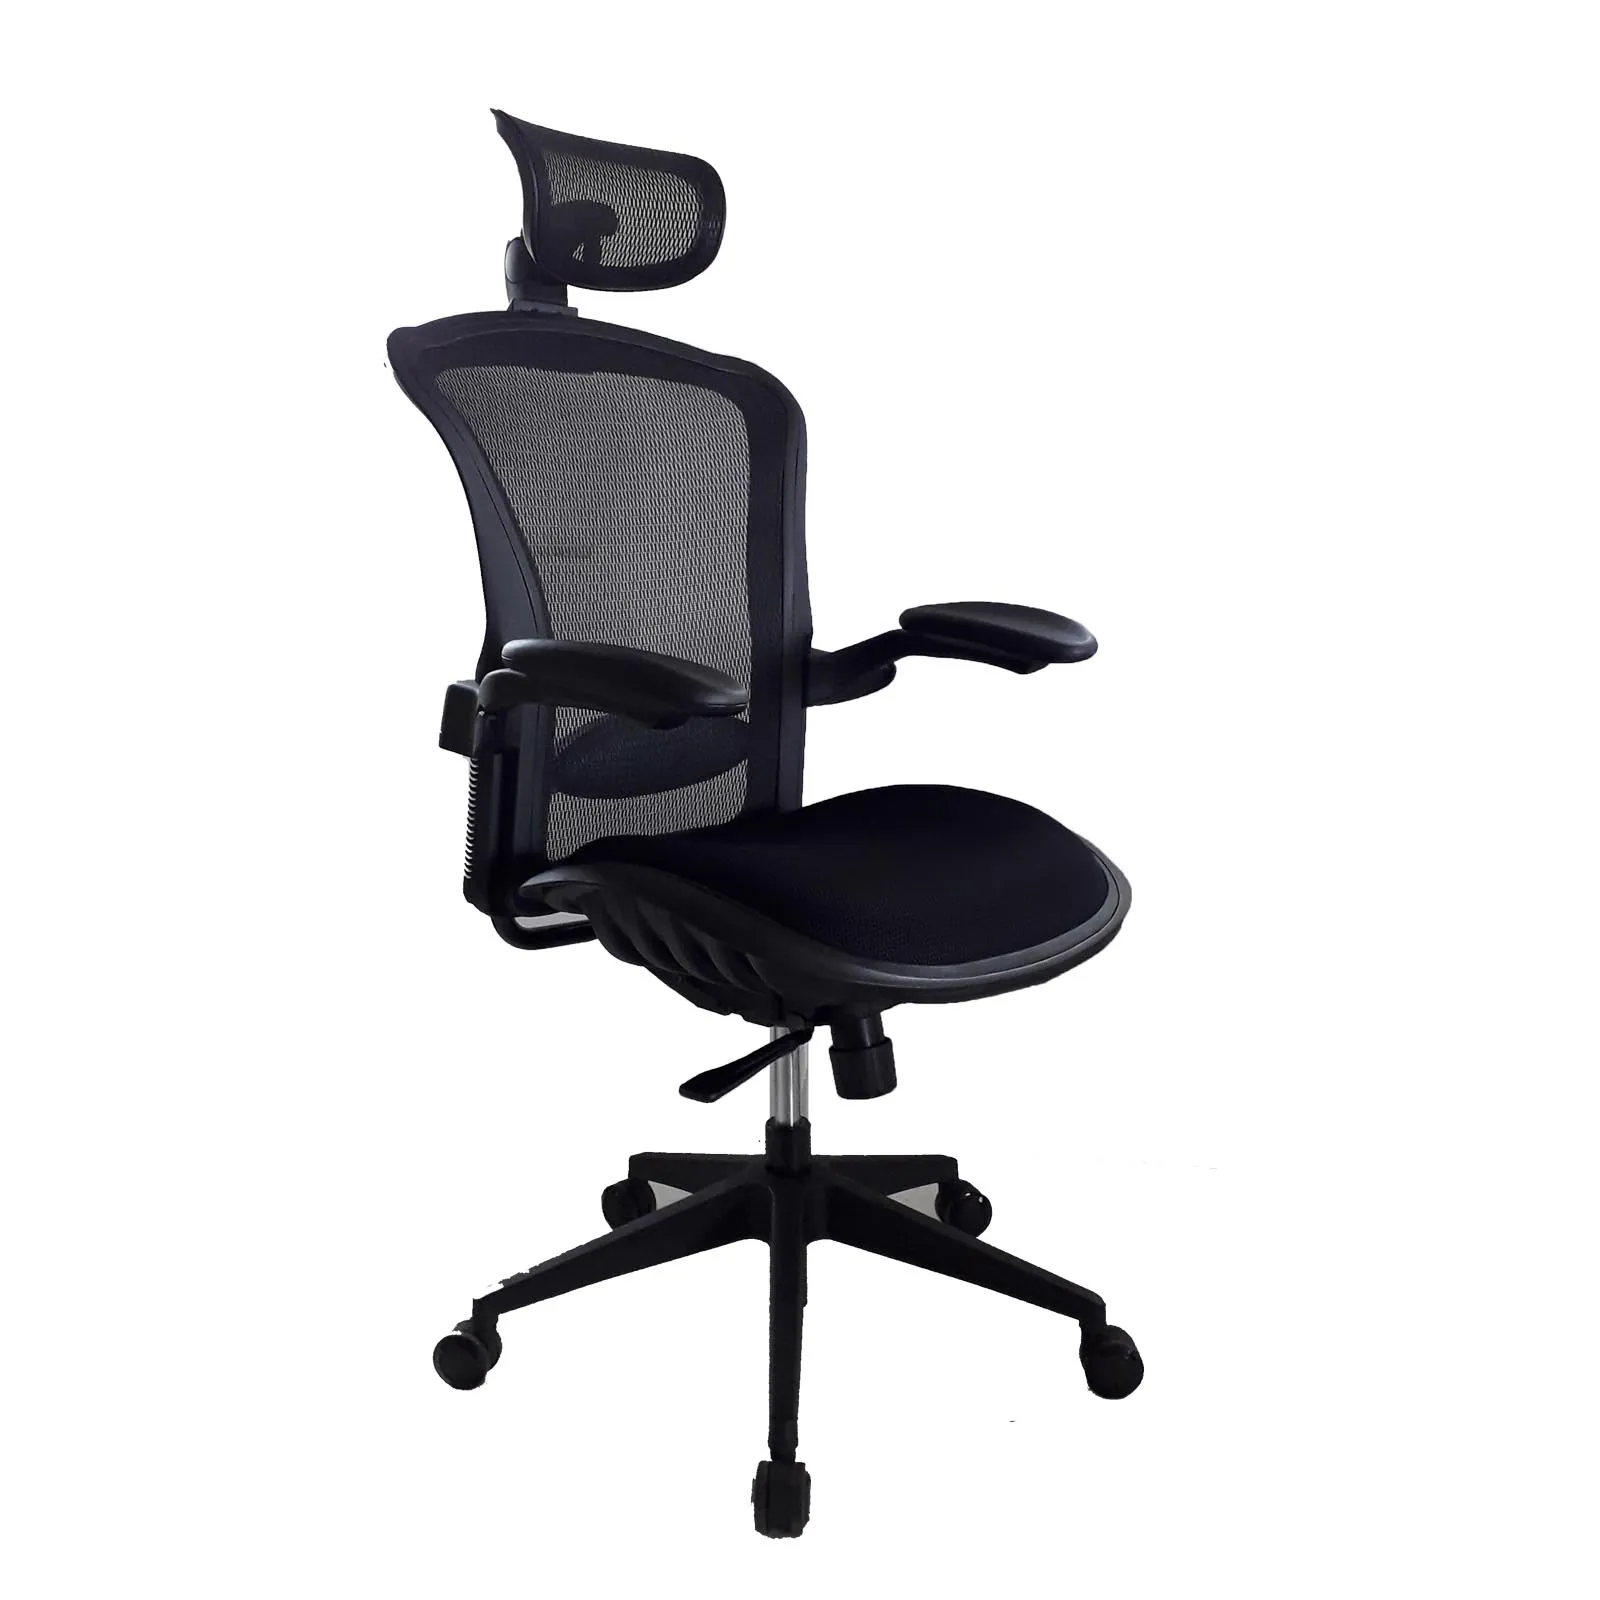 Ofis mobilyaları ayarlanabilir örgü döner ergonomik yüksek arka ofis koltuğu